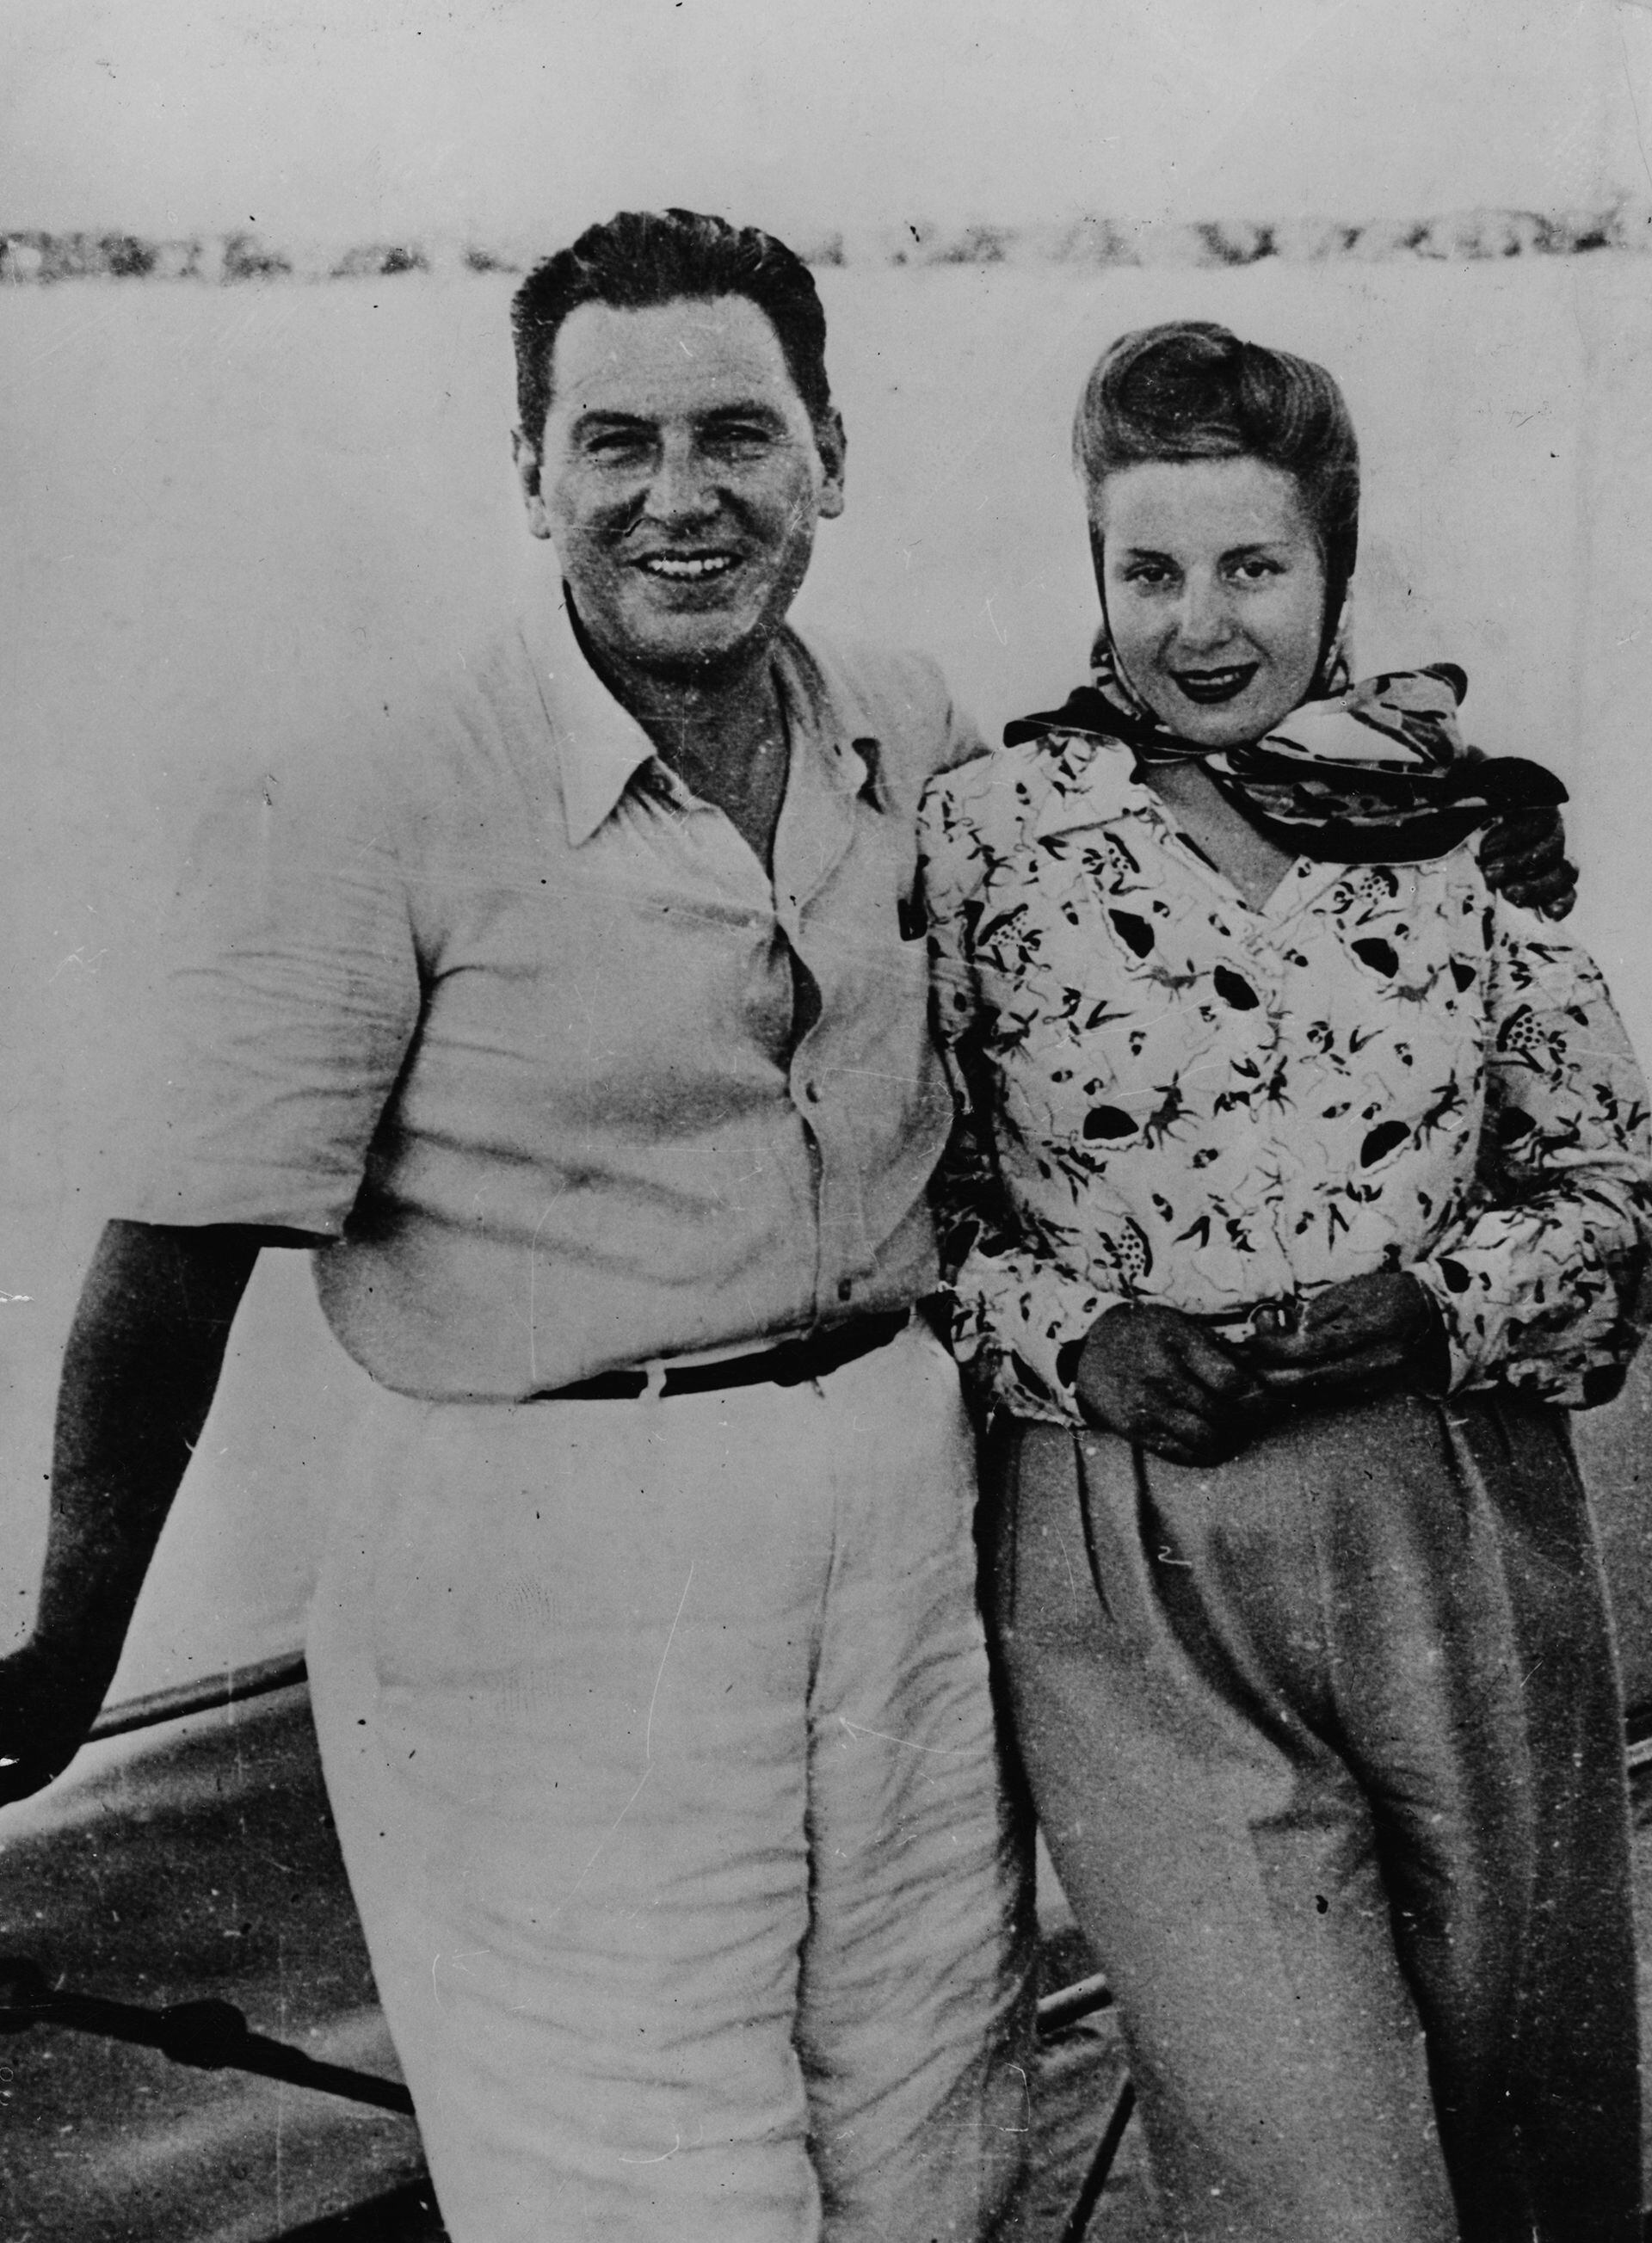 Perón estaba en su primer mandato como presidente cuando recibió la invitación de España. El eligió a su esposa de 27 años para que lo representase. (Fortografía de Keystone/Hulton Archive/Getty Images)